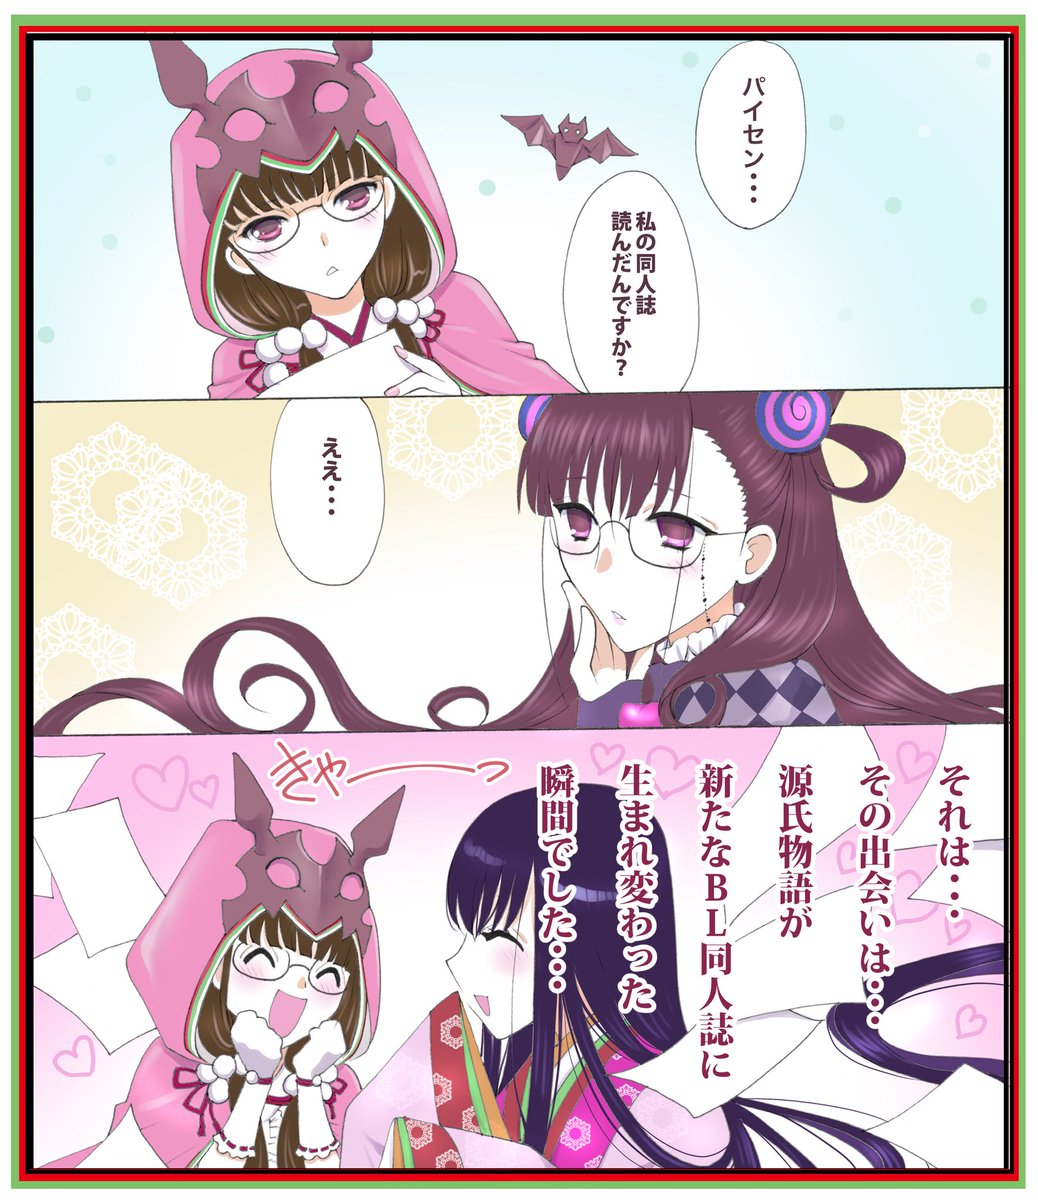 紫式部さんと刑部姫が出会って
思わず出てくる泰山解説祭マンガです。
#FGO #FateGO 